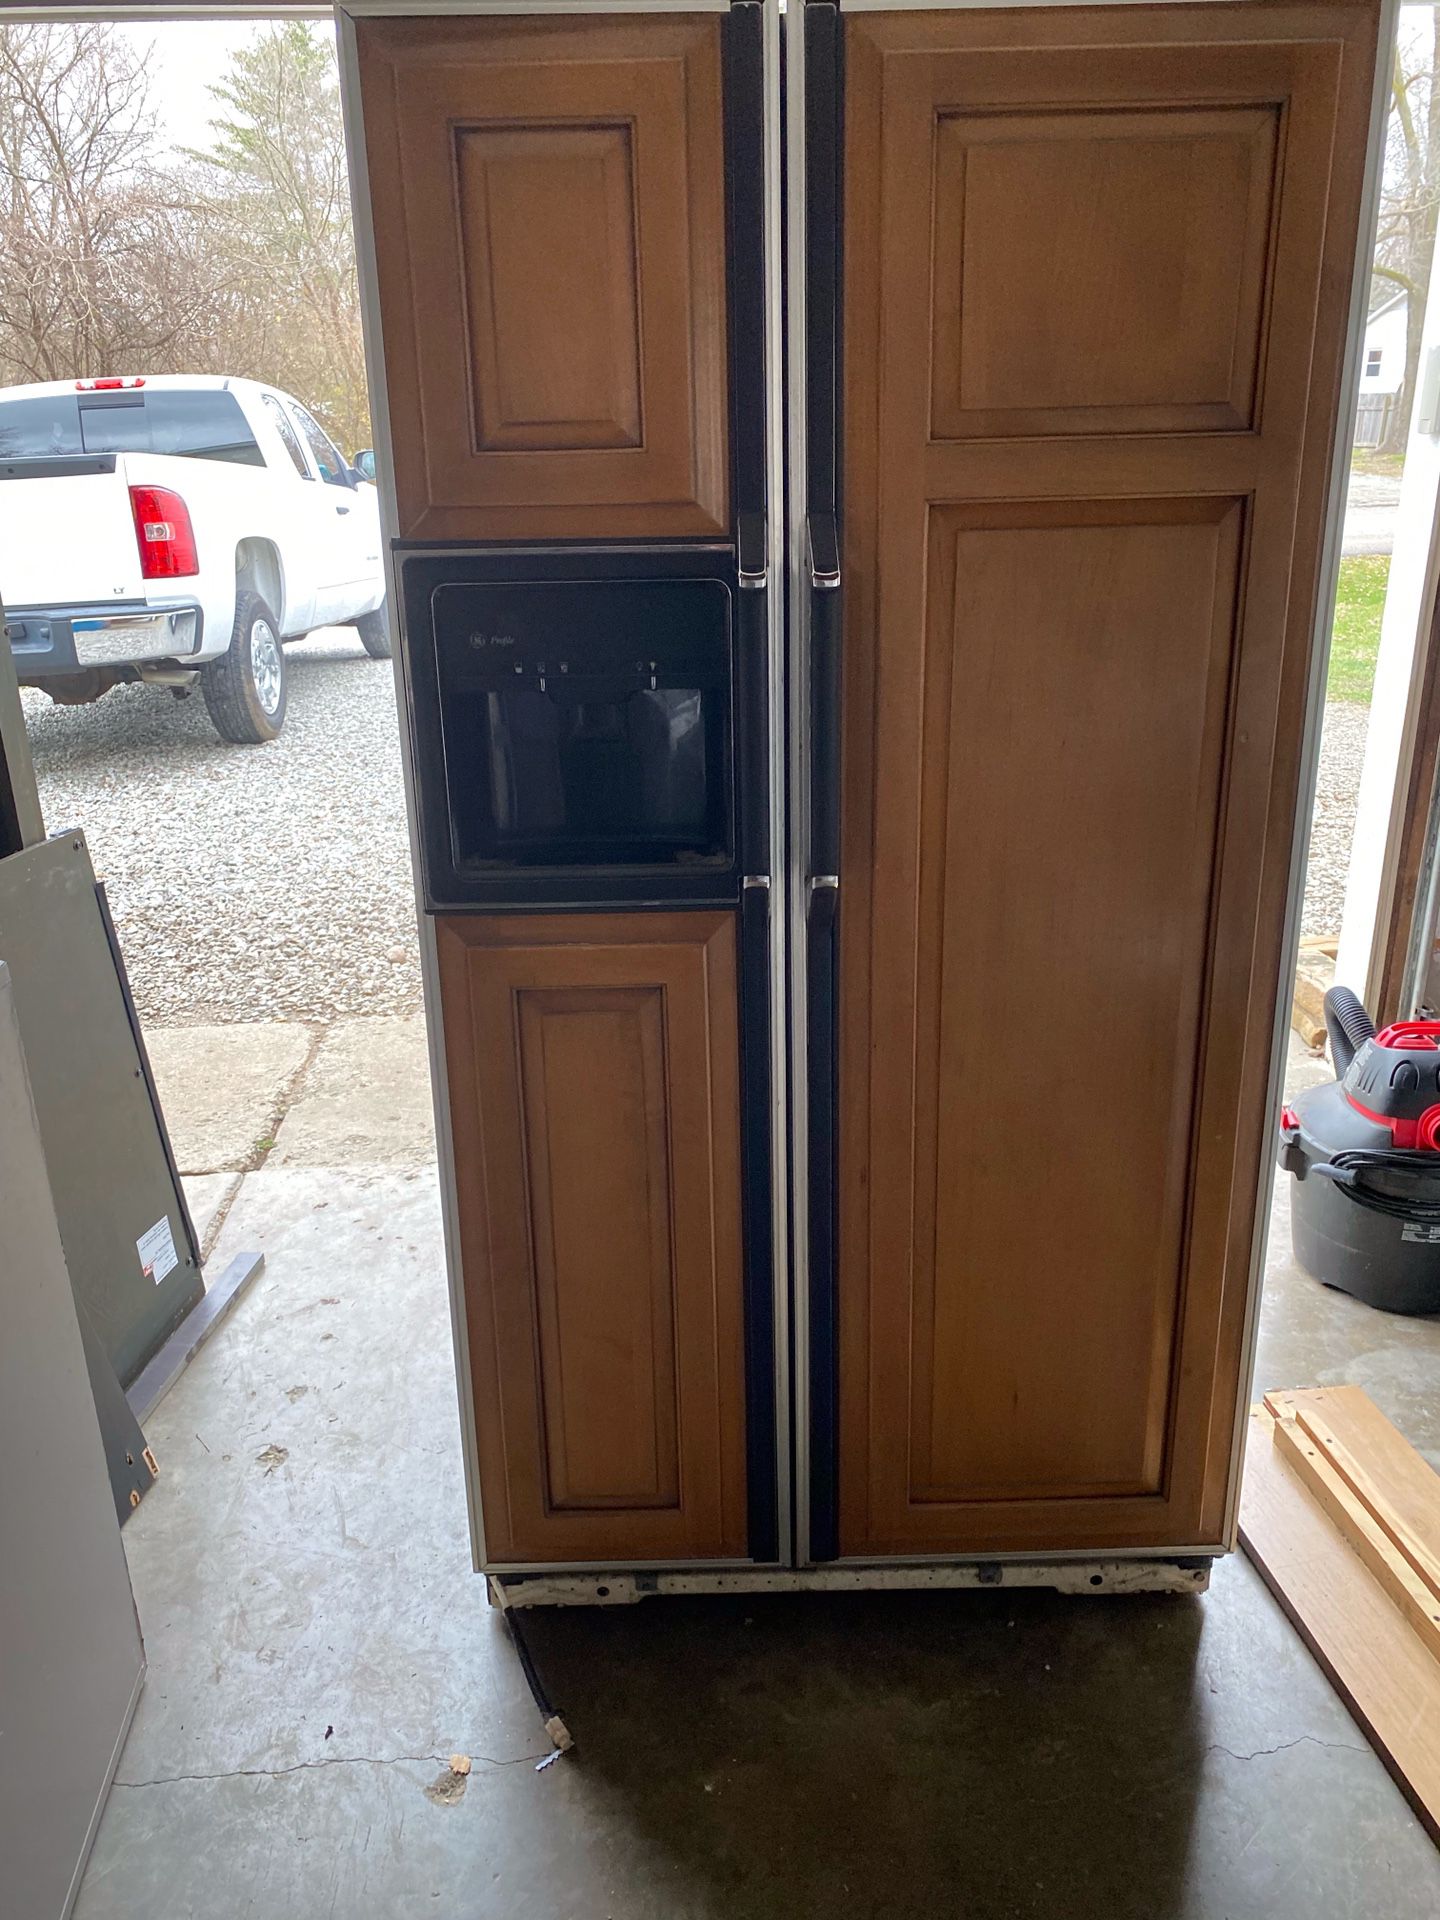 Double door wood grain refrigerator